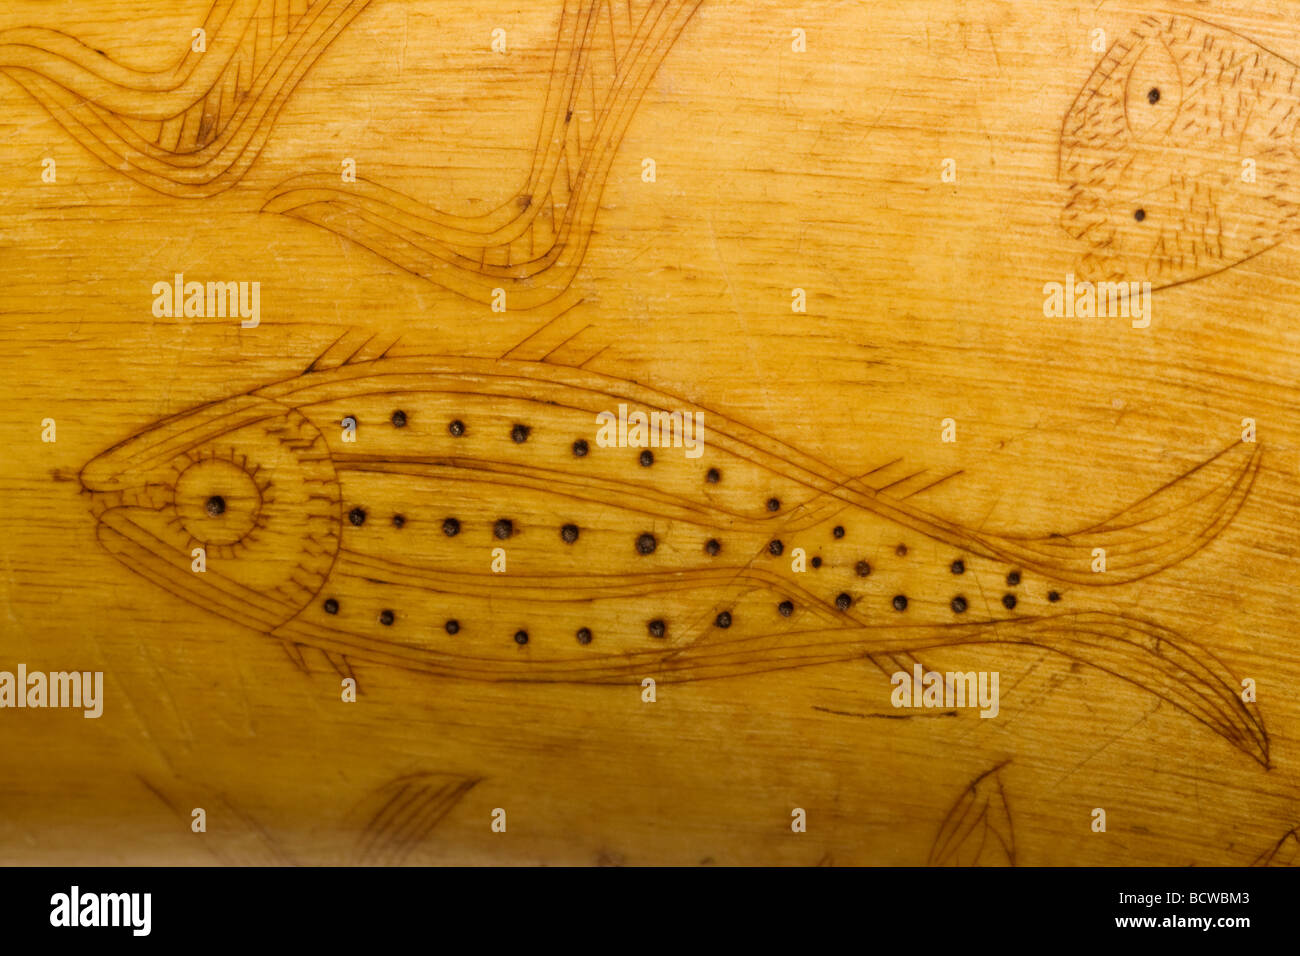 Arte popolare carving pesce su 1800 s polvere dettaglio avvisatore acustico Foto Stock